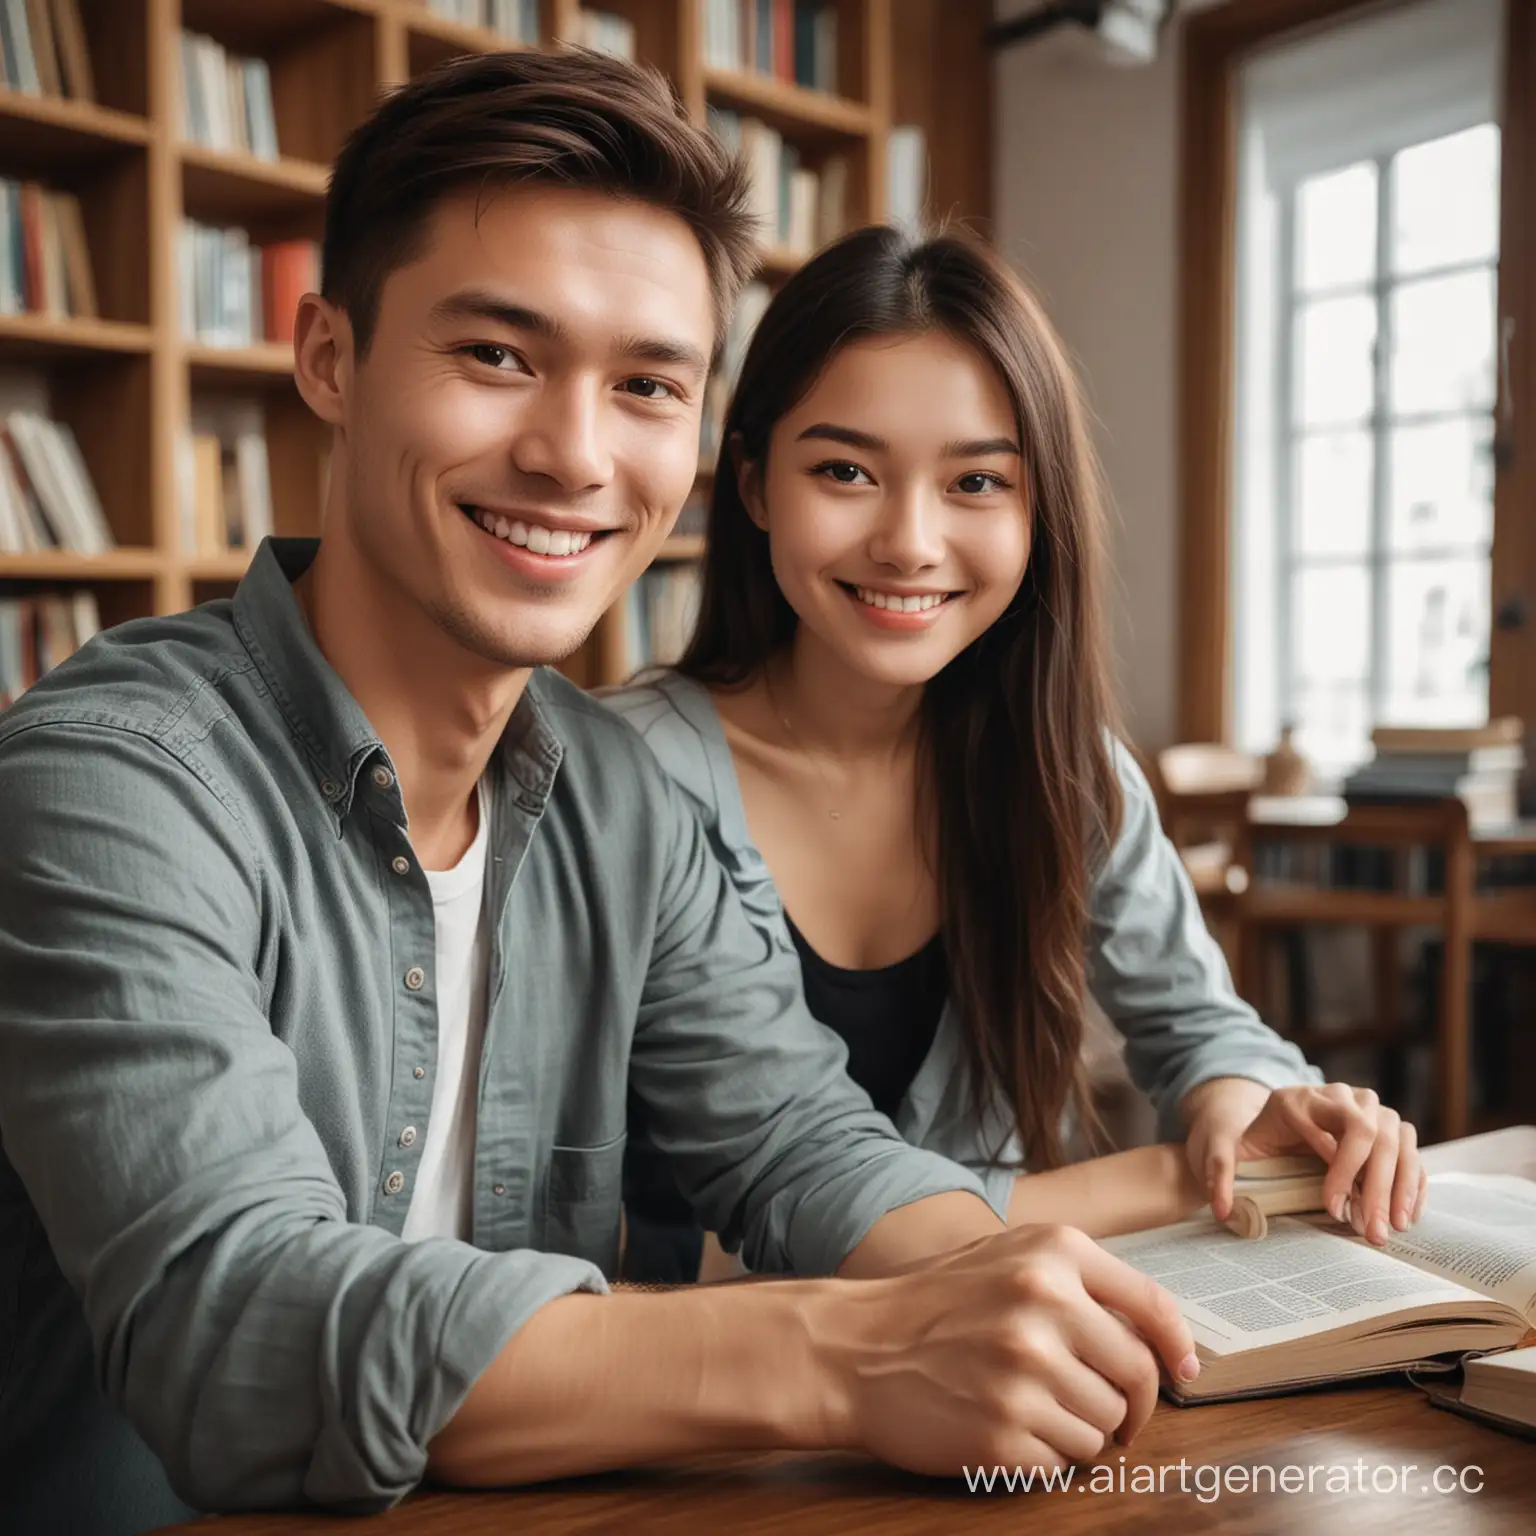 китайская девушка и русский парень улыбаются, читают книги в современной хорошо освещенной библиотеке, сидя за столом
